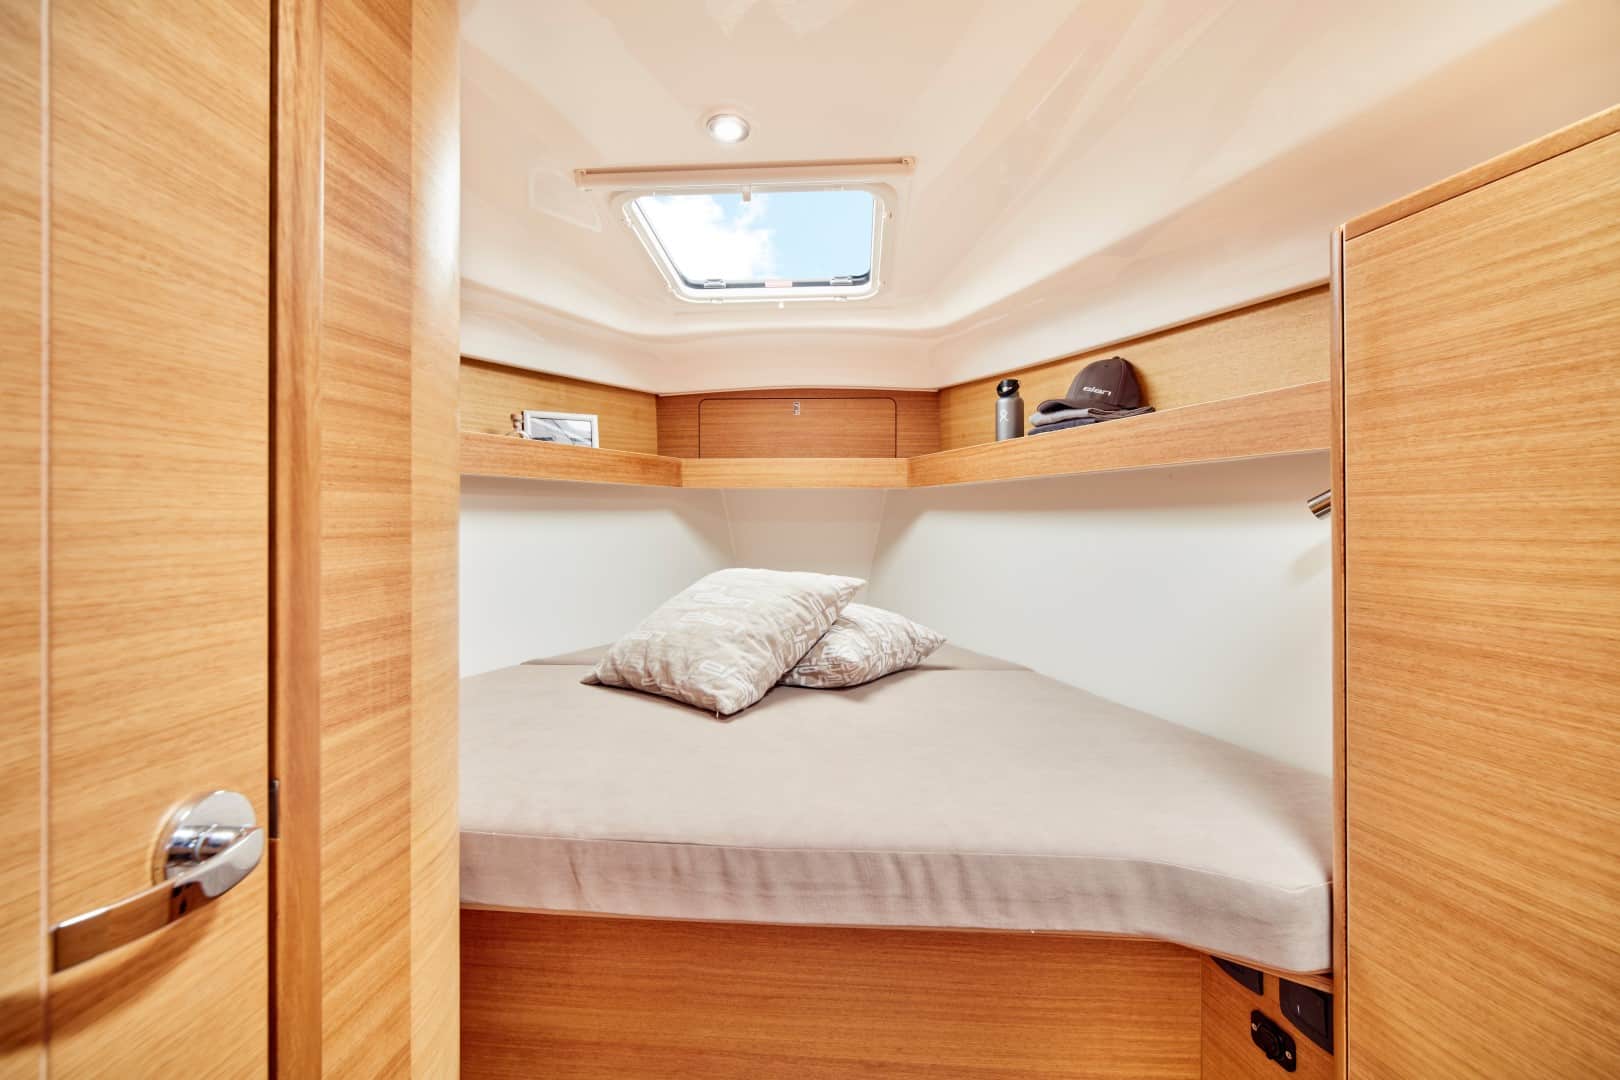 Kompakte Segelyachtkabine mit ordentlich gemachtem Bett, hellen Holzpaneelen an Wänden und Schränken und einem kleinen Fenster oben. Auf dem Bett liegen Kissen und Decke, darüber befinden sich Regale.